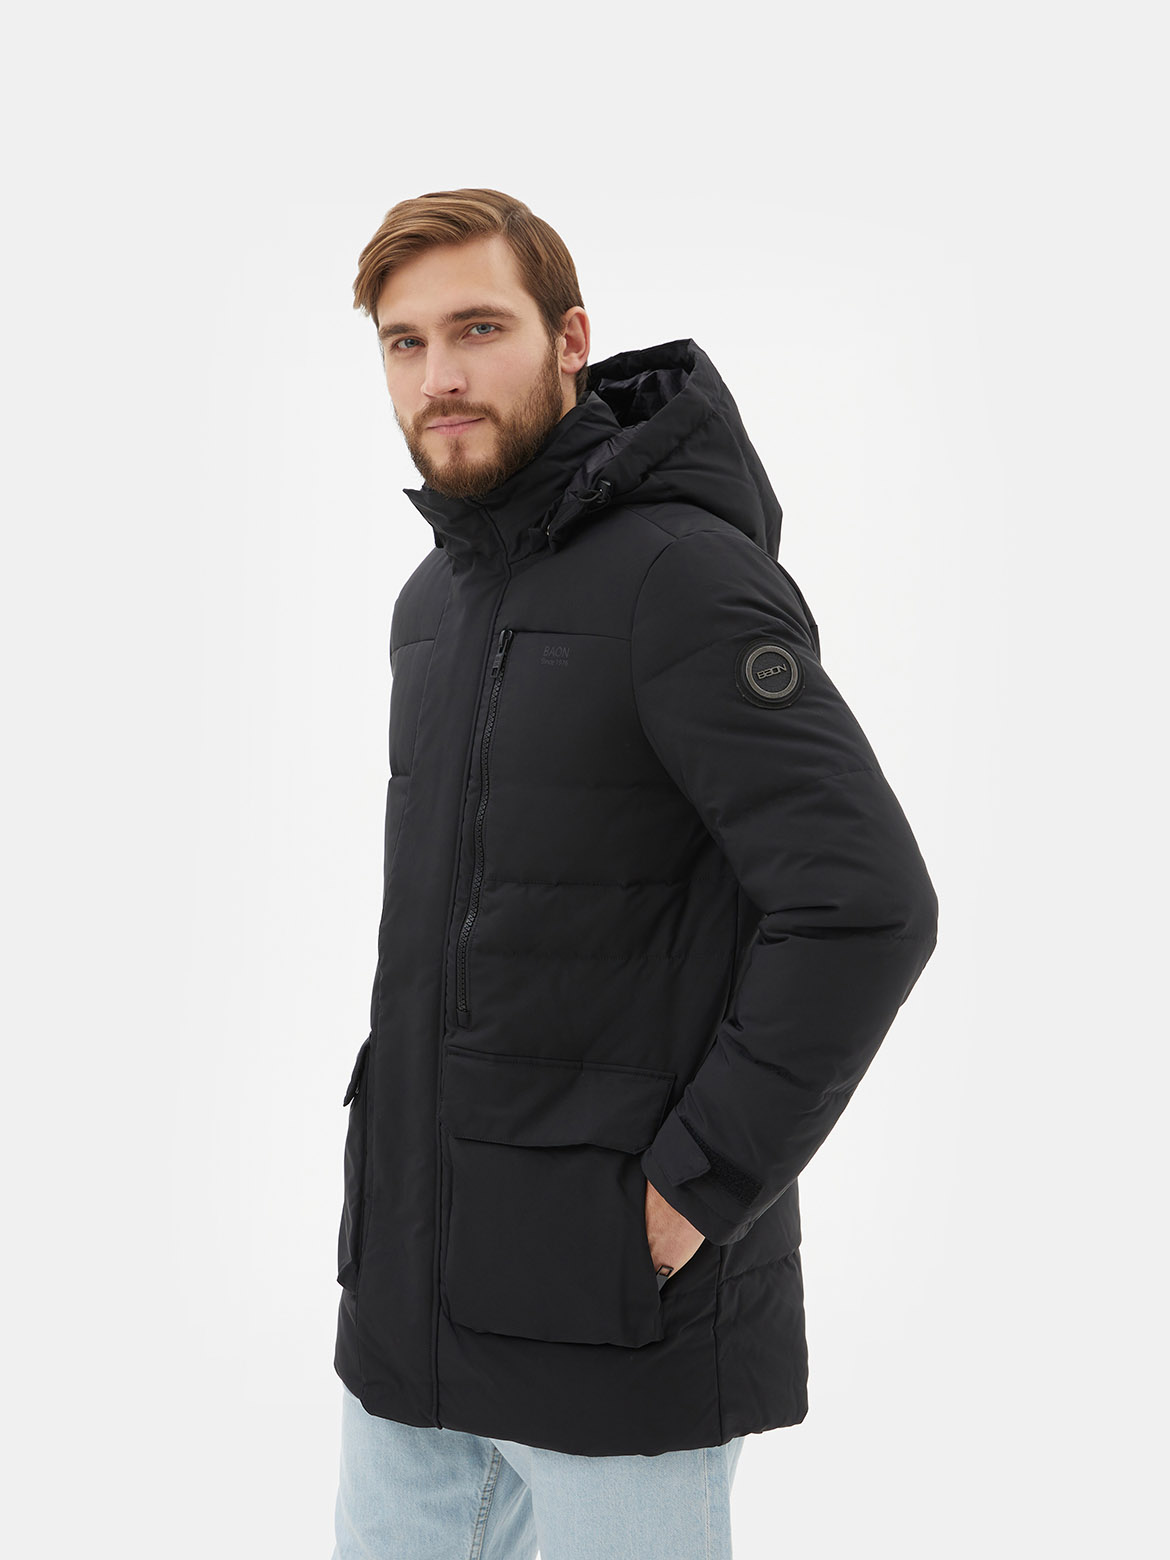 Зимняя куртка мужская Ralf Ringer B5022506 черная 56